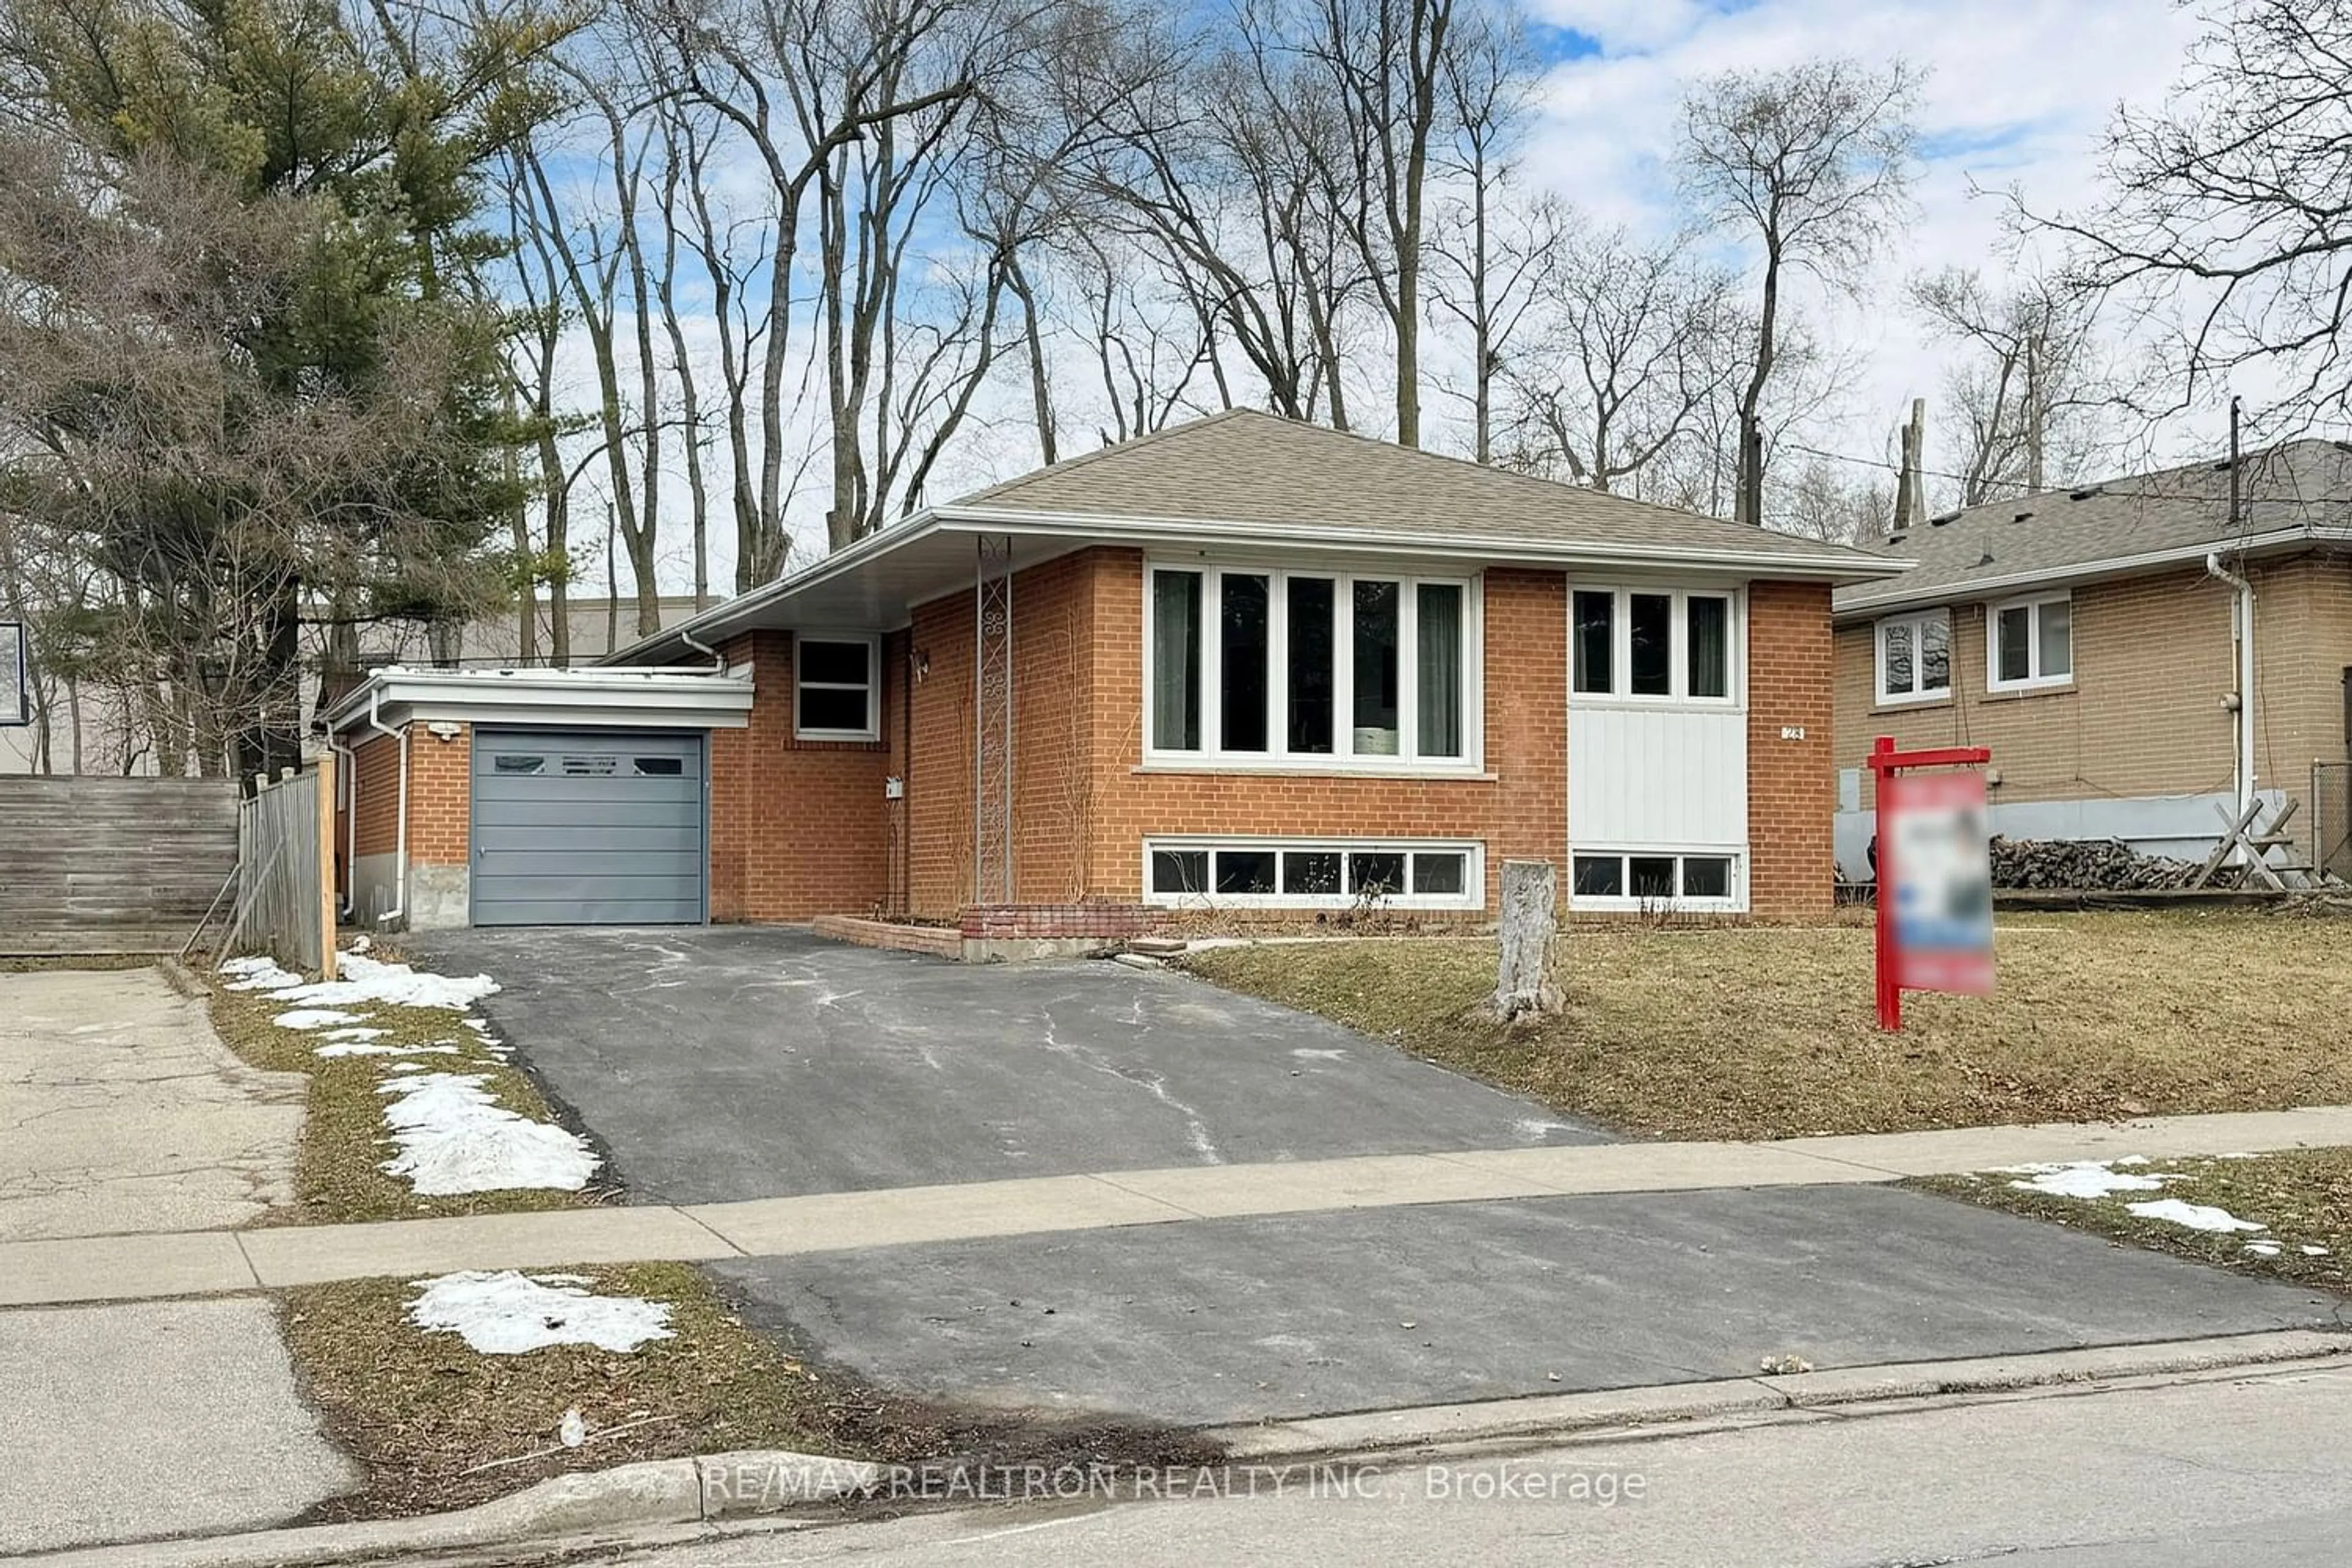 Home with brick exterior material for 28 Broadlands Blvd, Toronto Ontario M3A 1J2